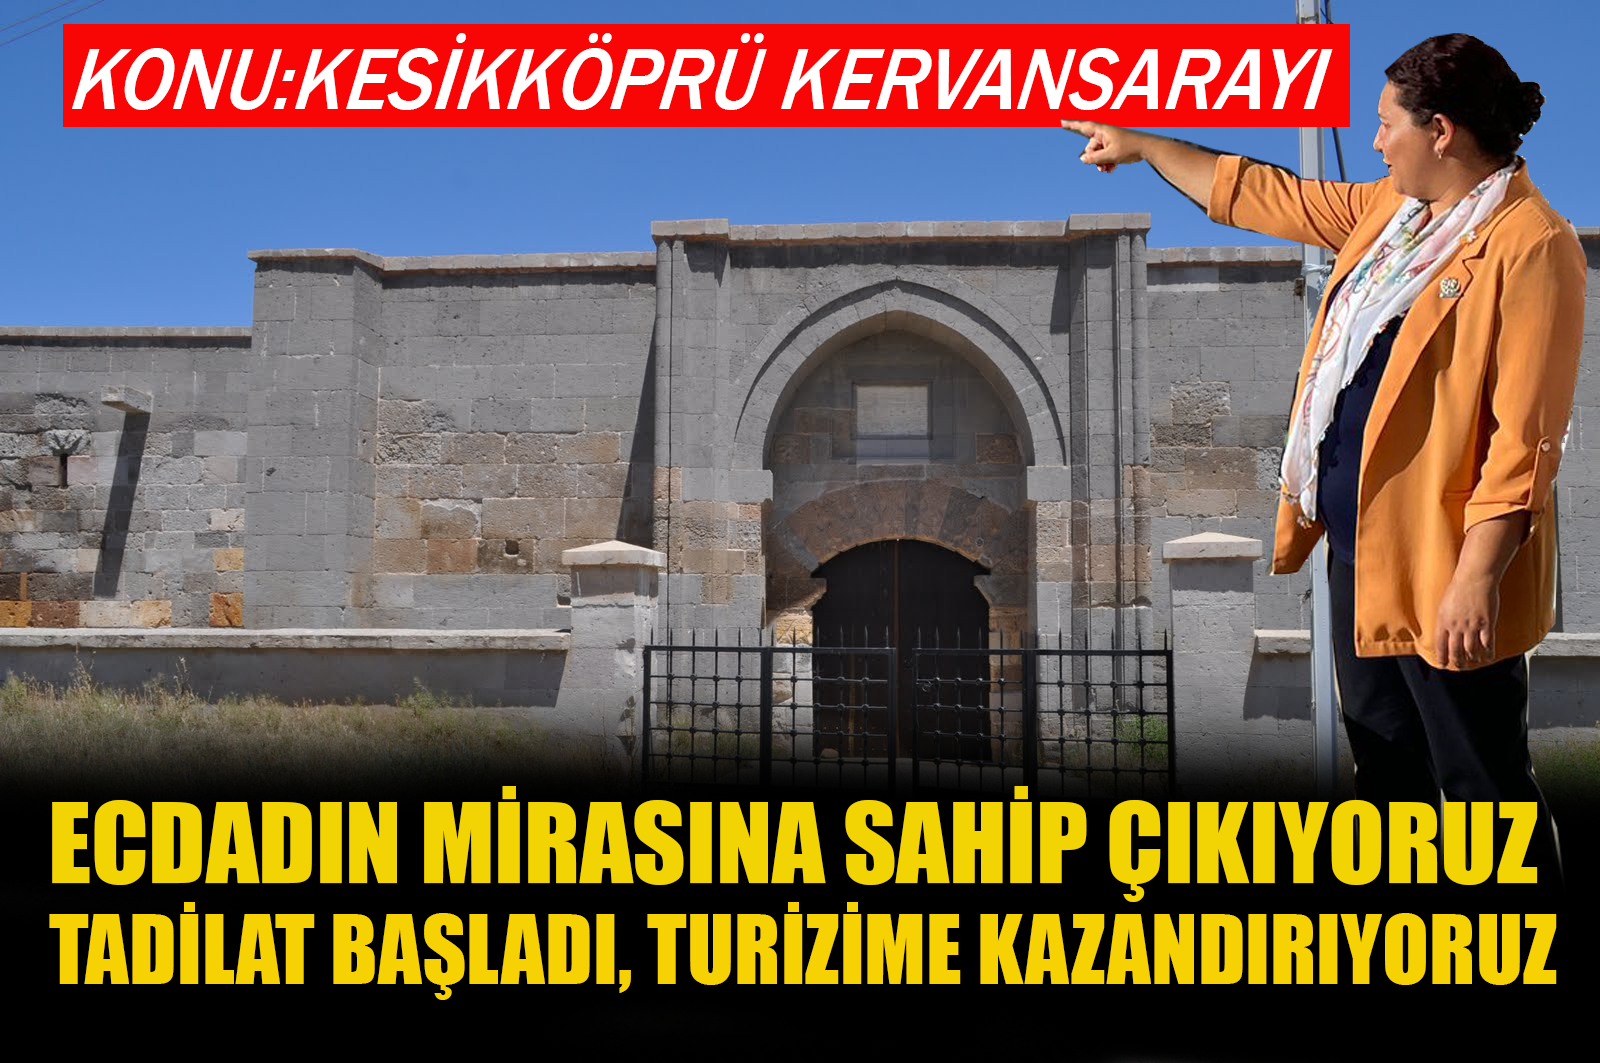 İl Başkanı Ünsal: Kesikköprü Kervansarayına sahip çıktık